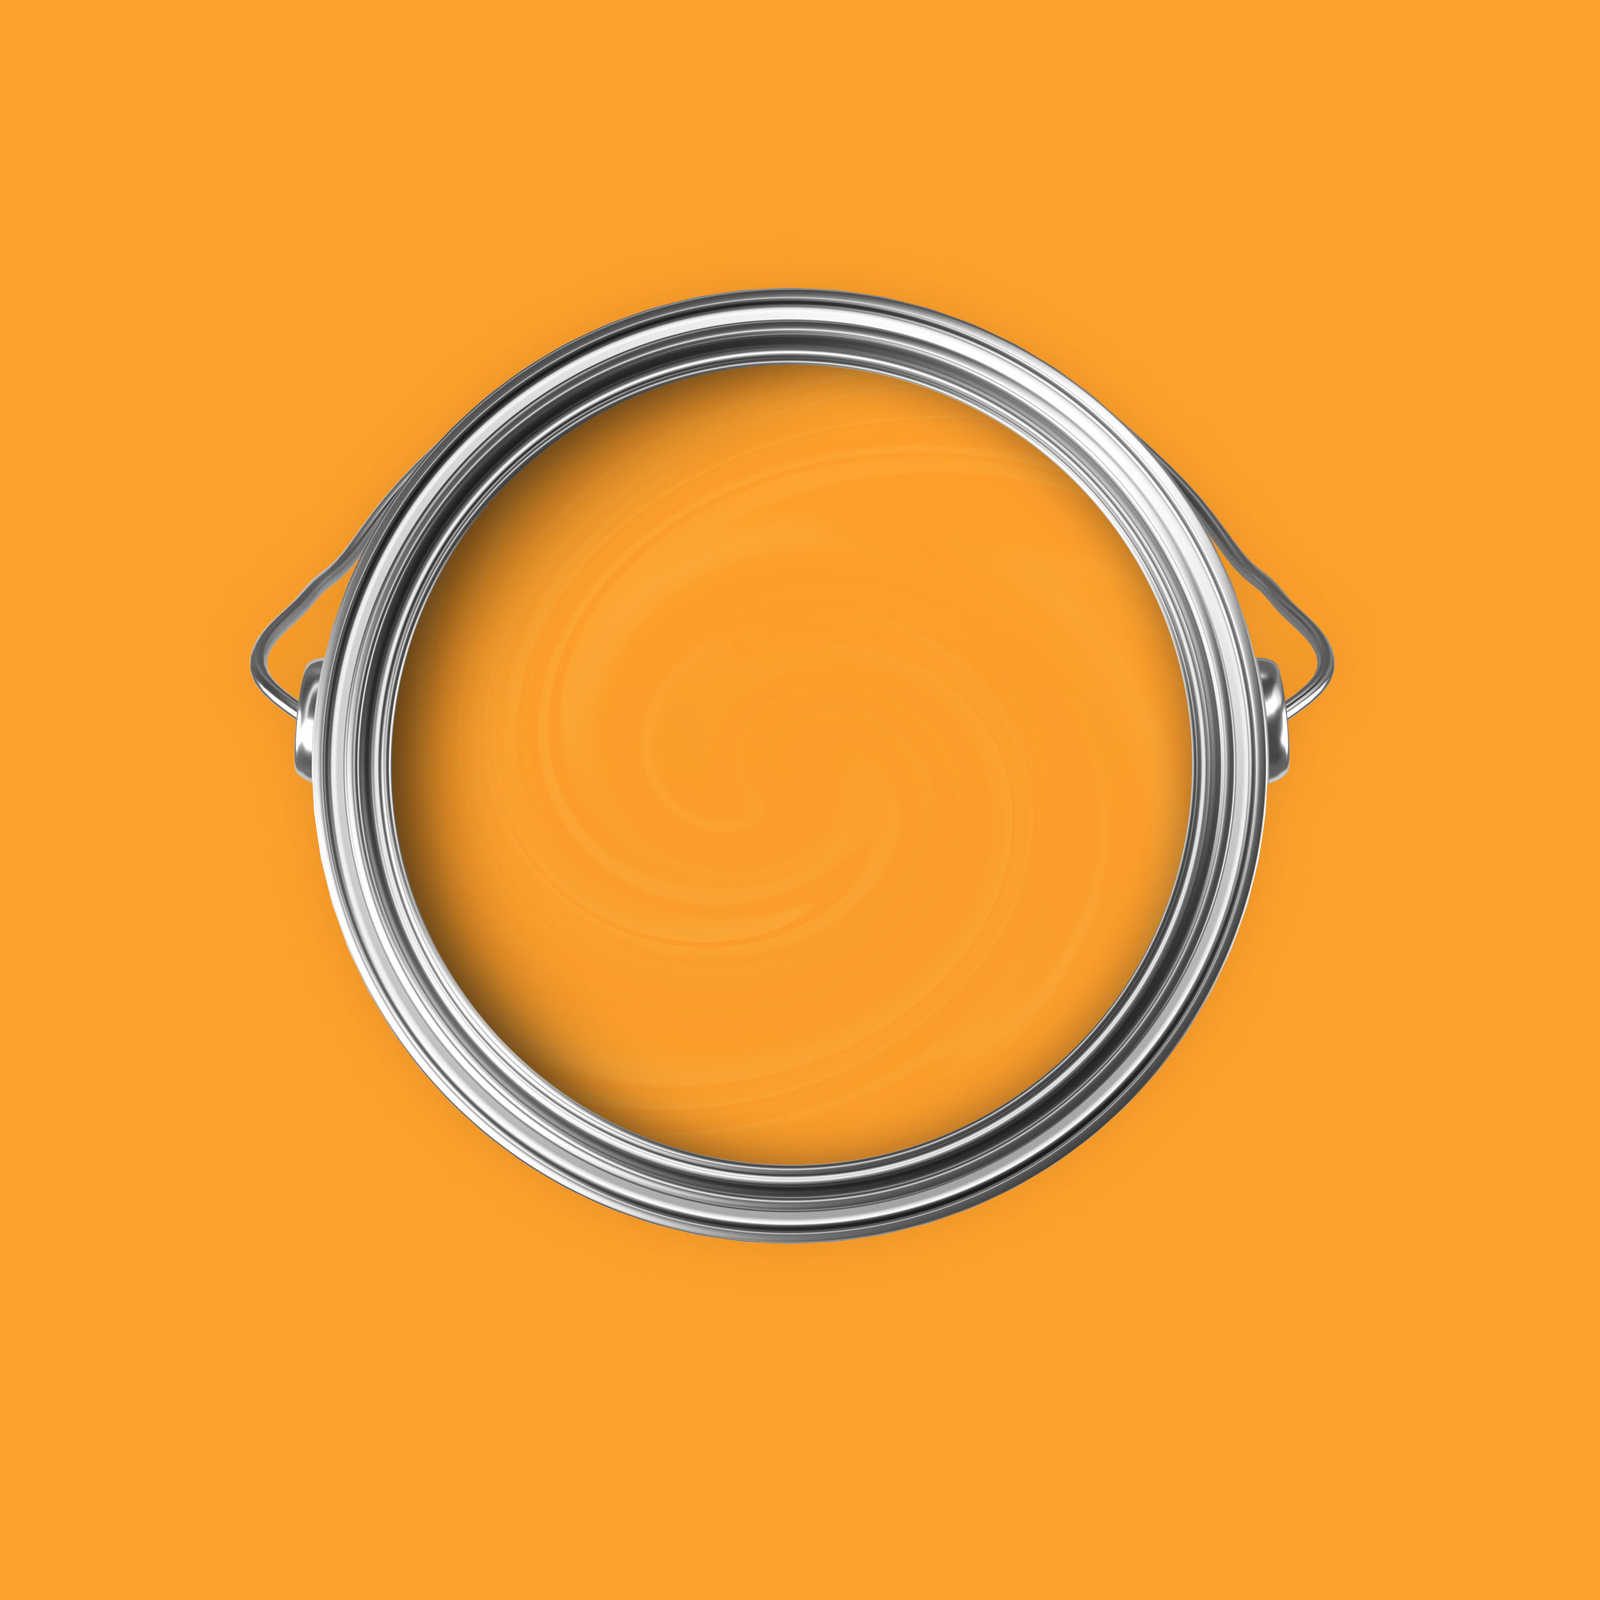             Premium Wandfarbe heiteres Honiggelb »Juicy Yellow« NW807 – 5 Liter
        